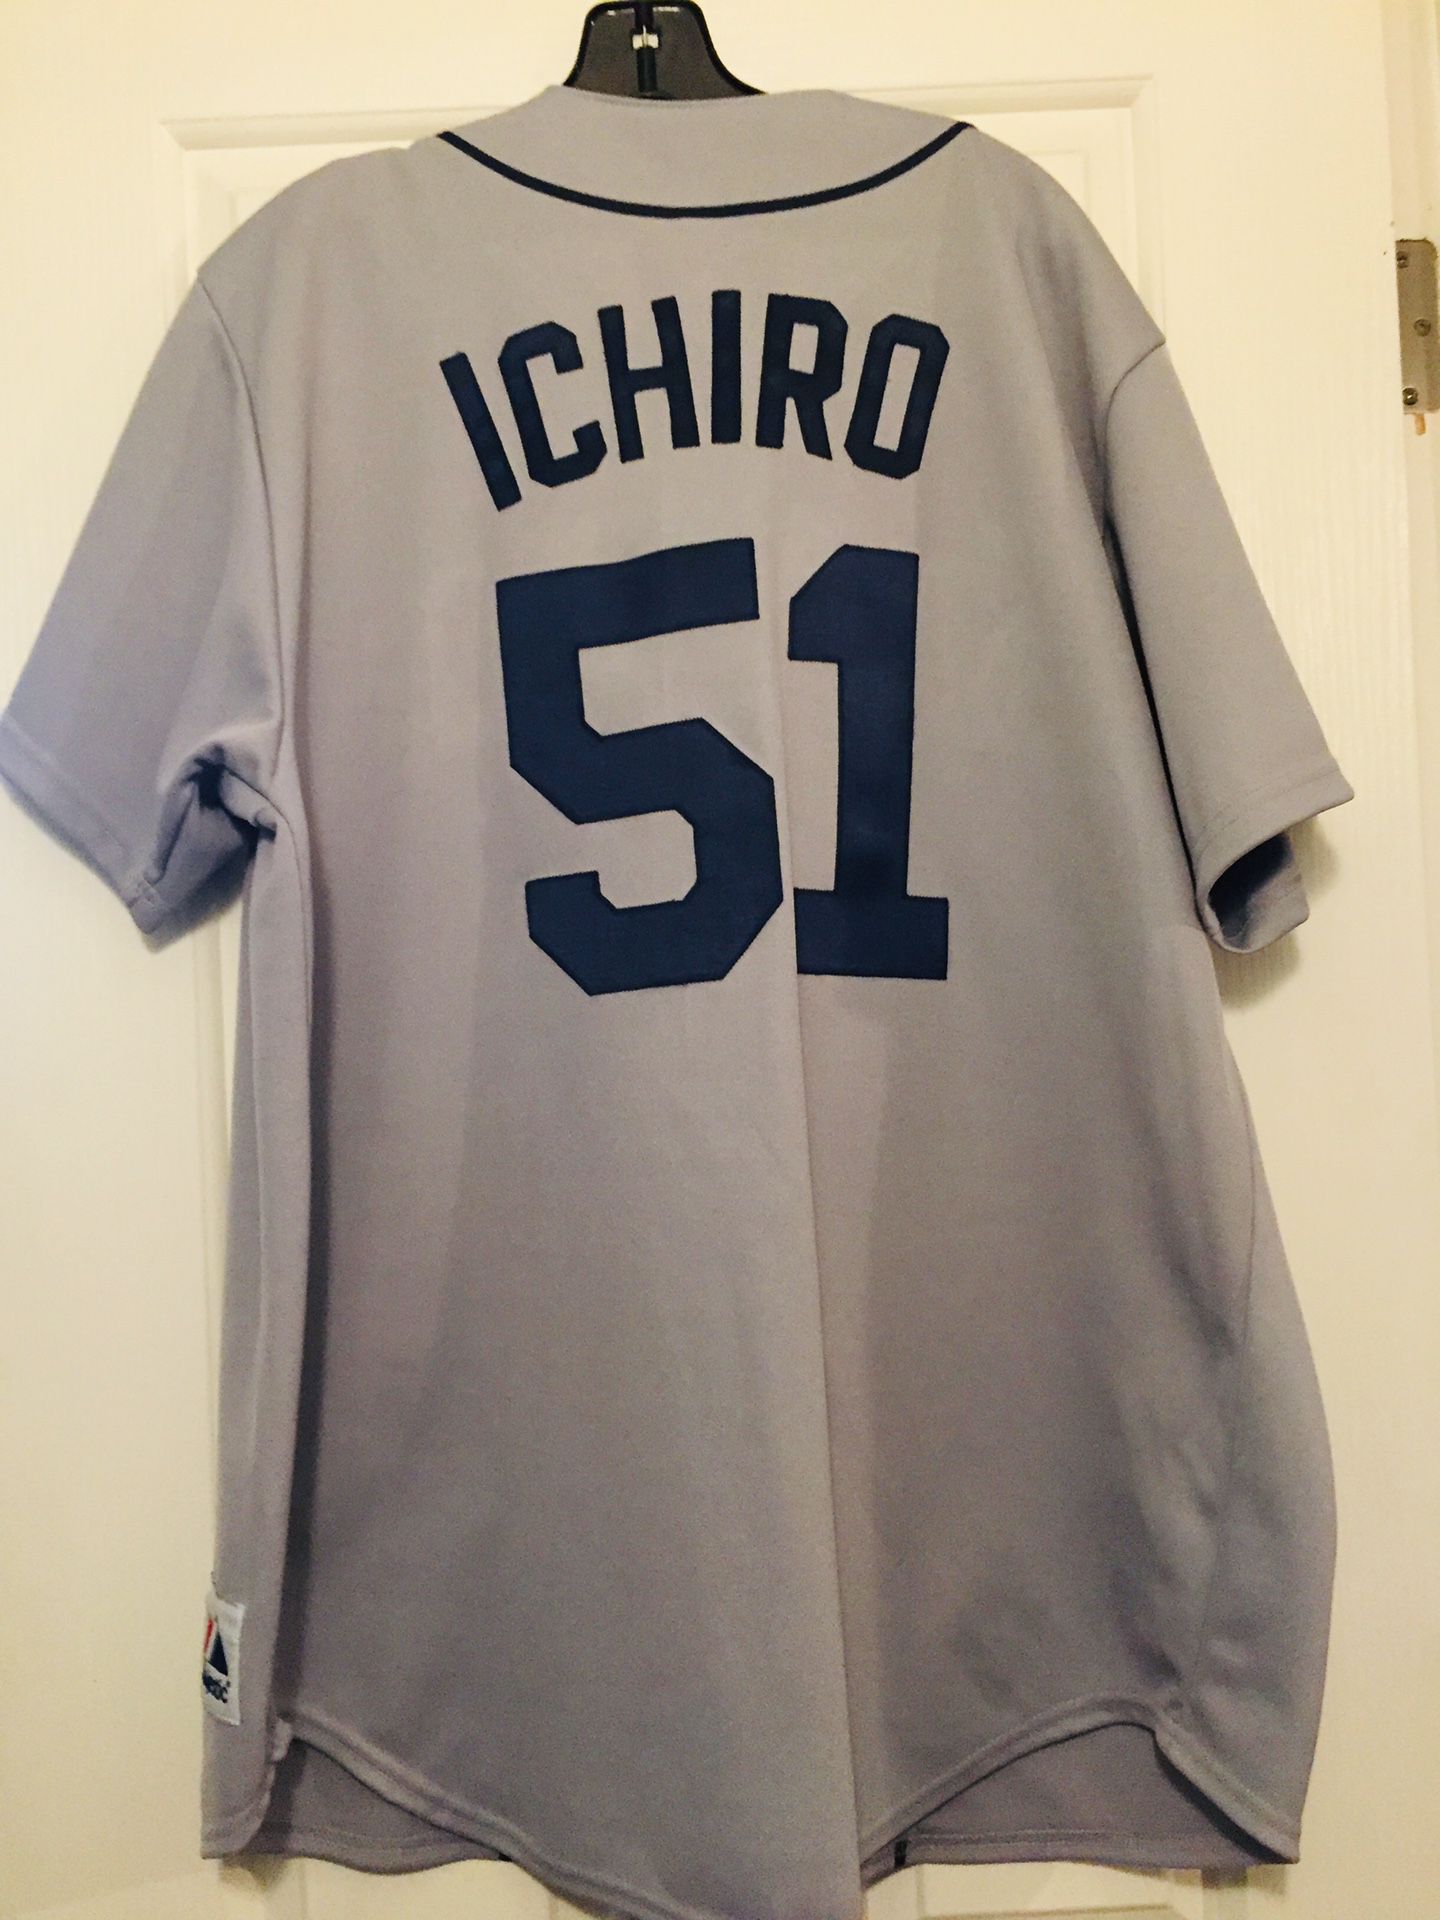 Ichiro #51 - Authentic Baseball Jersey